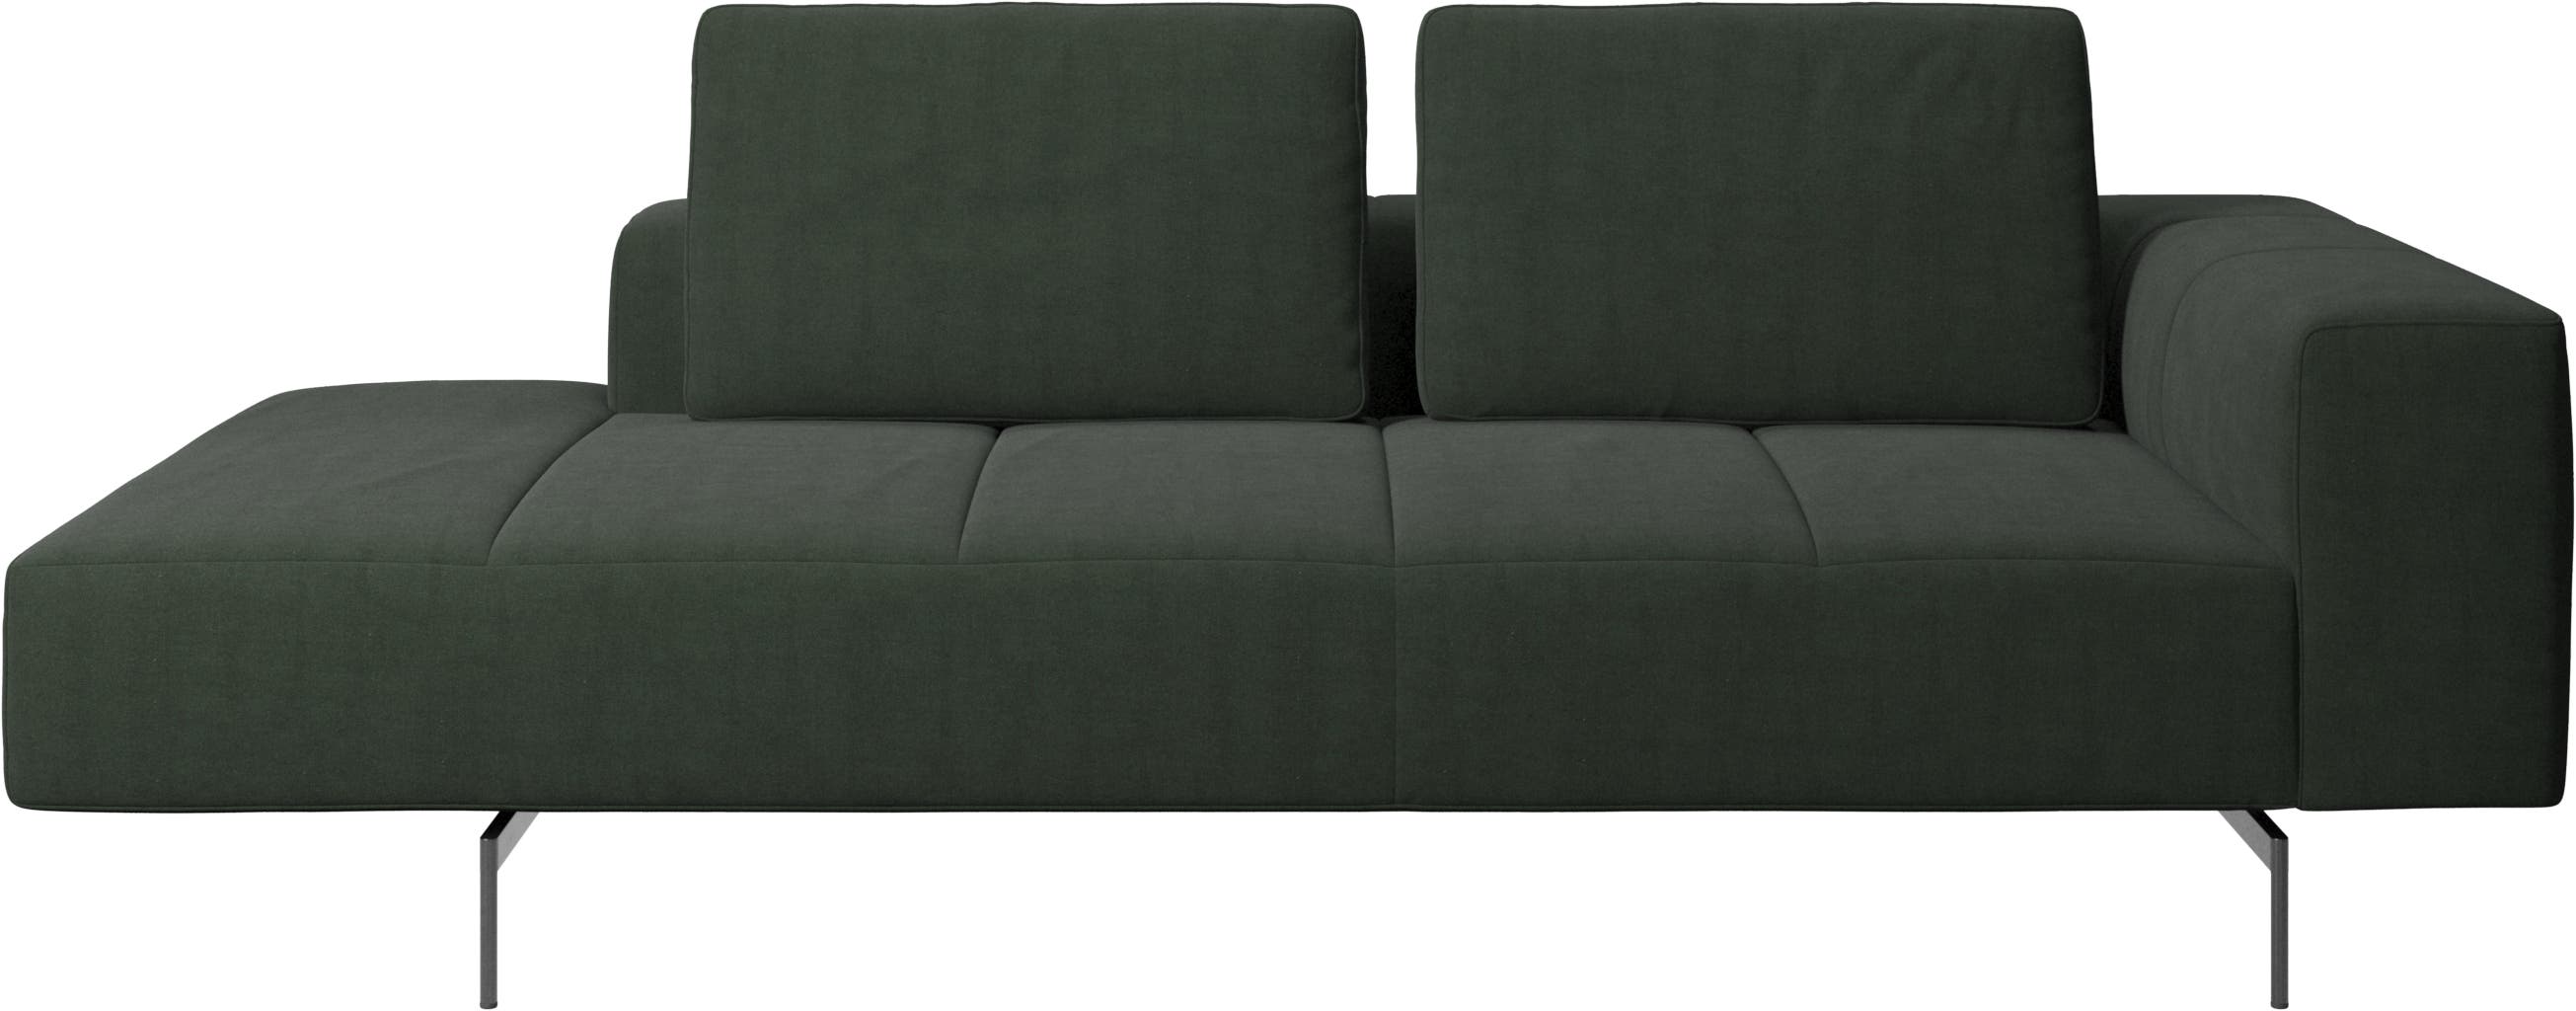 Amsterdam modul til sofa, armlæn højre, open end venstre